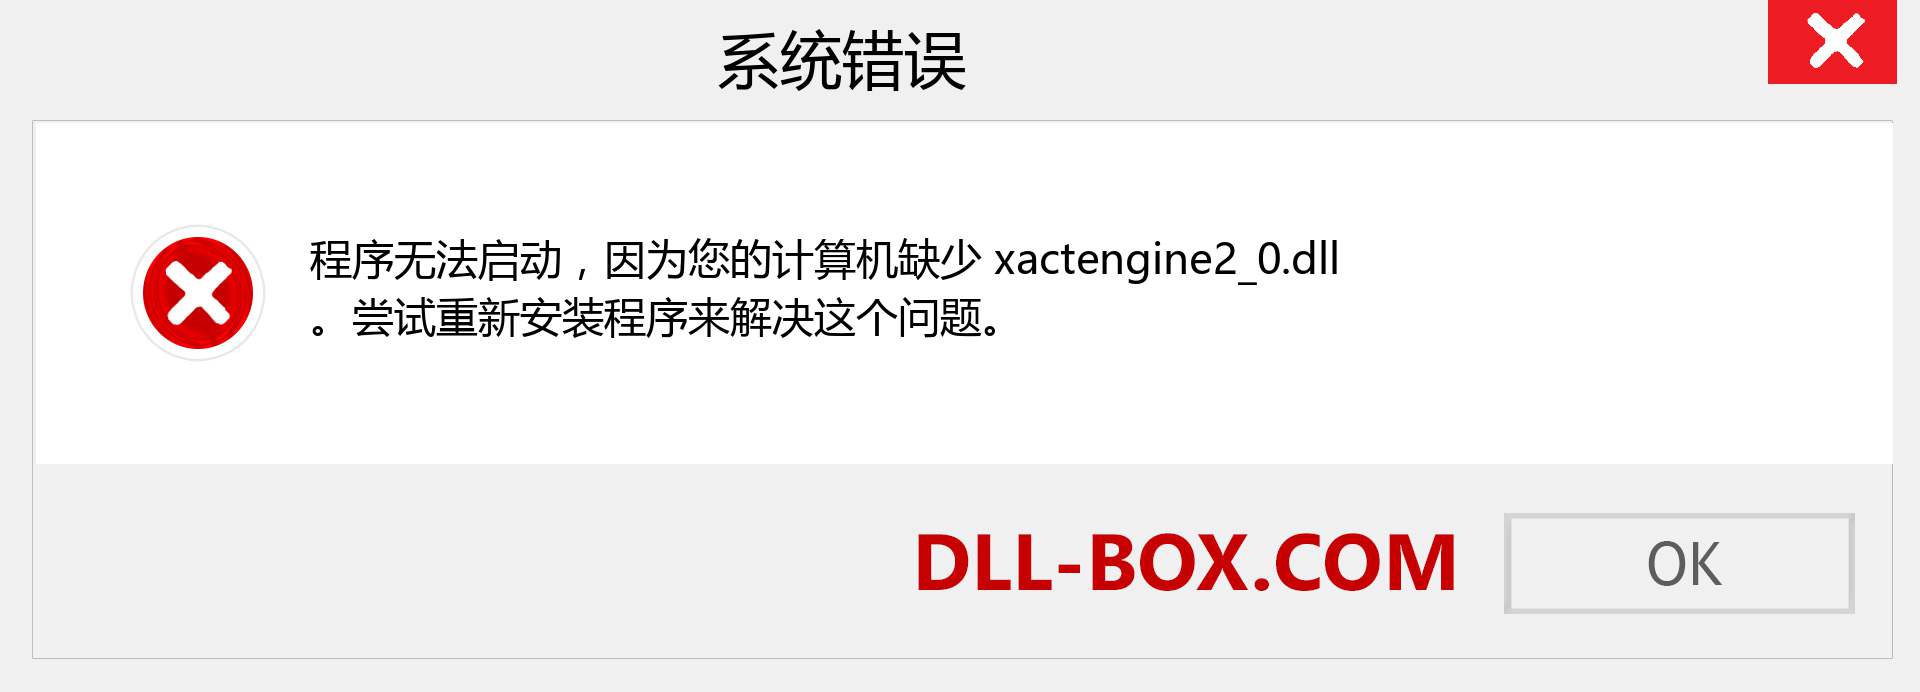 xactengine2_0.dll 文件丢失？。 适用于 Windows 7、8、10 的下载 - 修复 Windows、照片、图像上的 xactengine2_0 dll 丢失错误